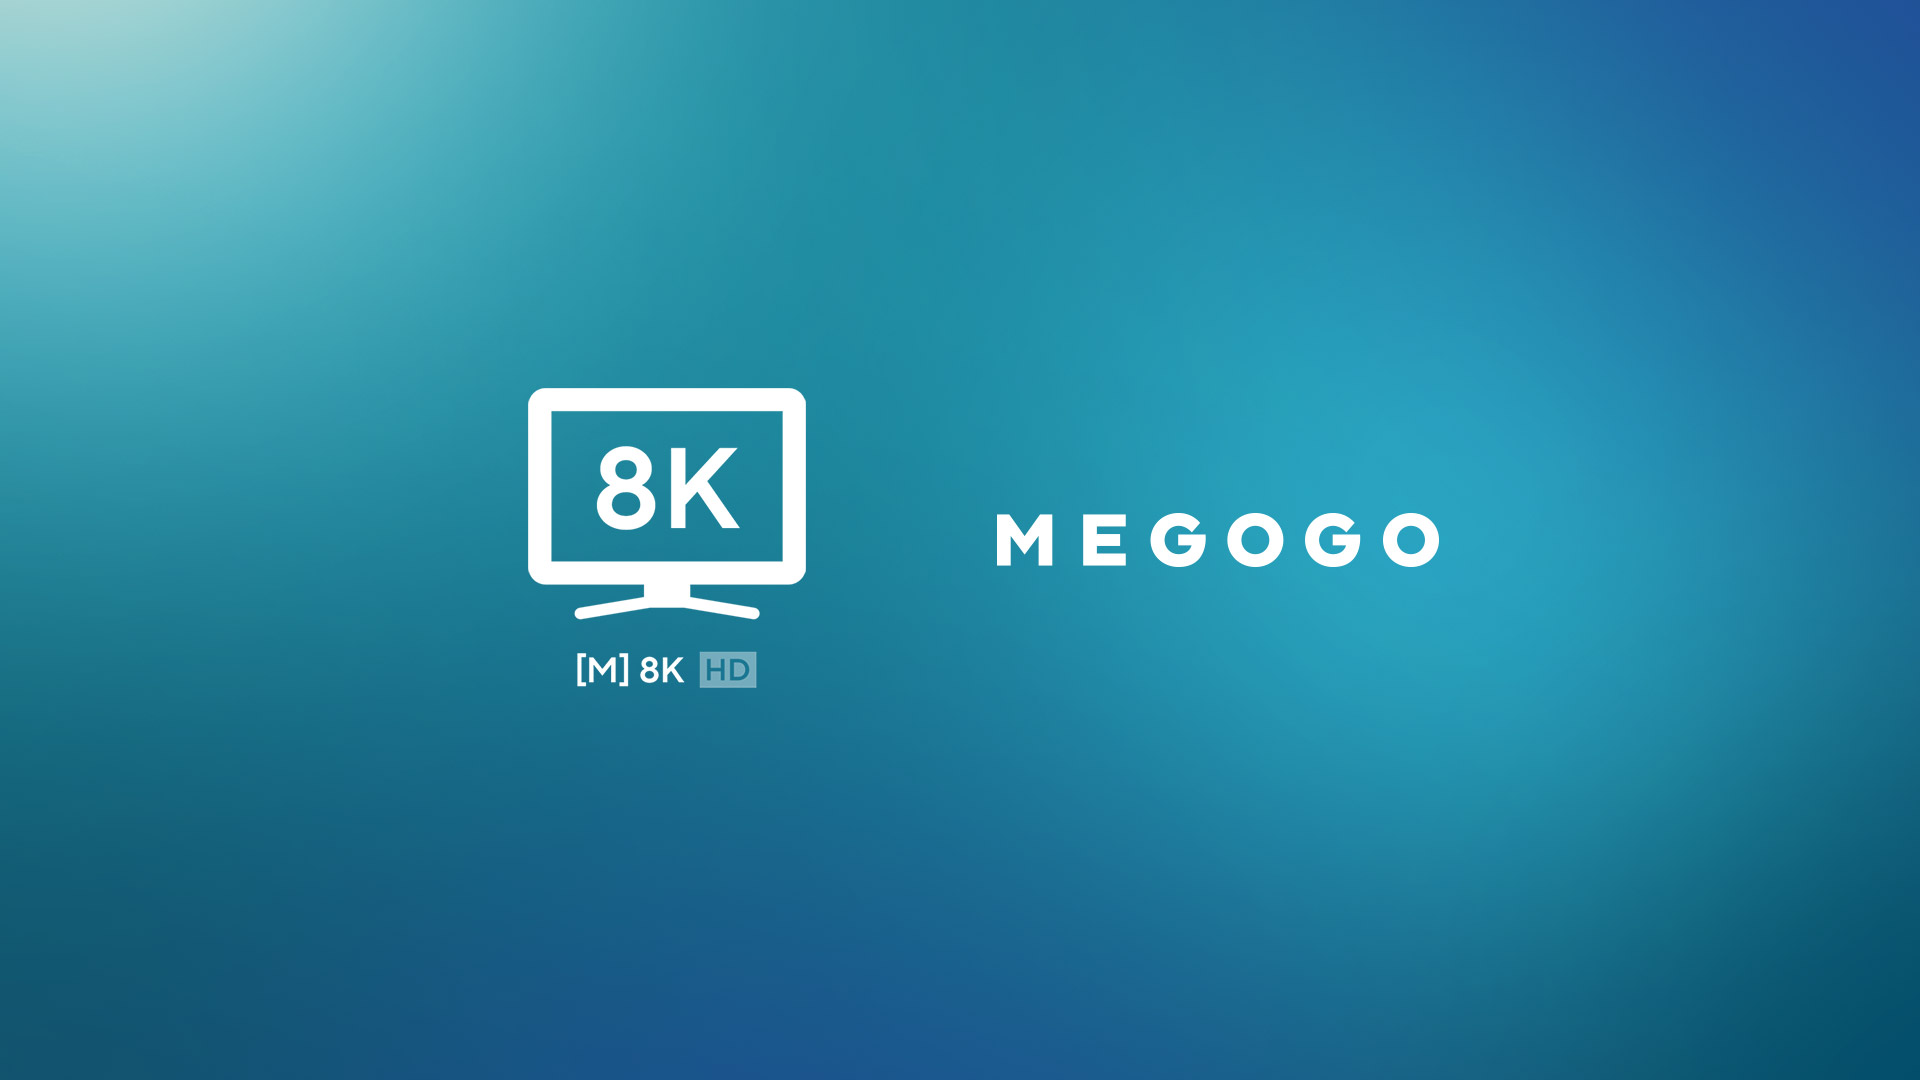 MEGOGO lancia il primo canale in Ucraina a trasmettere con risoluzione 8K